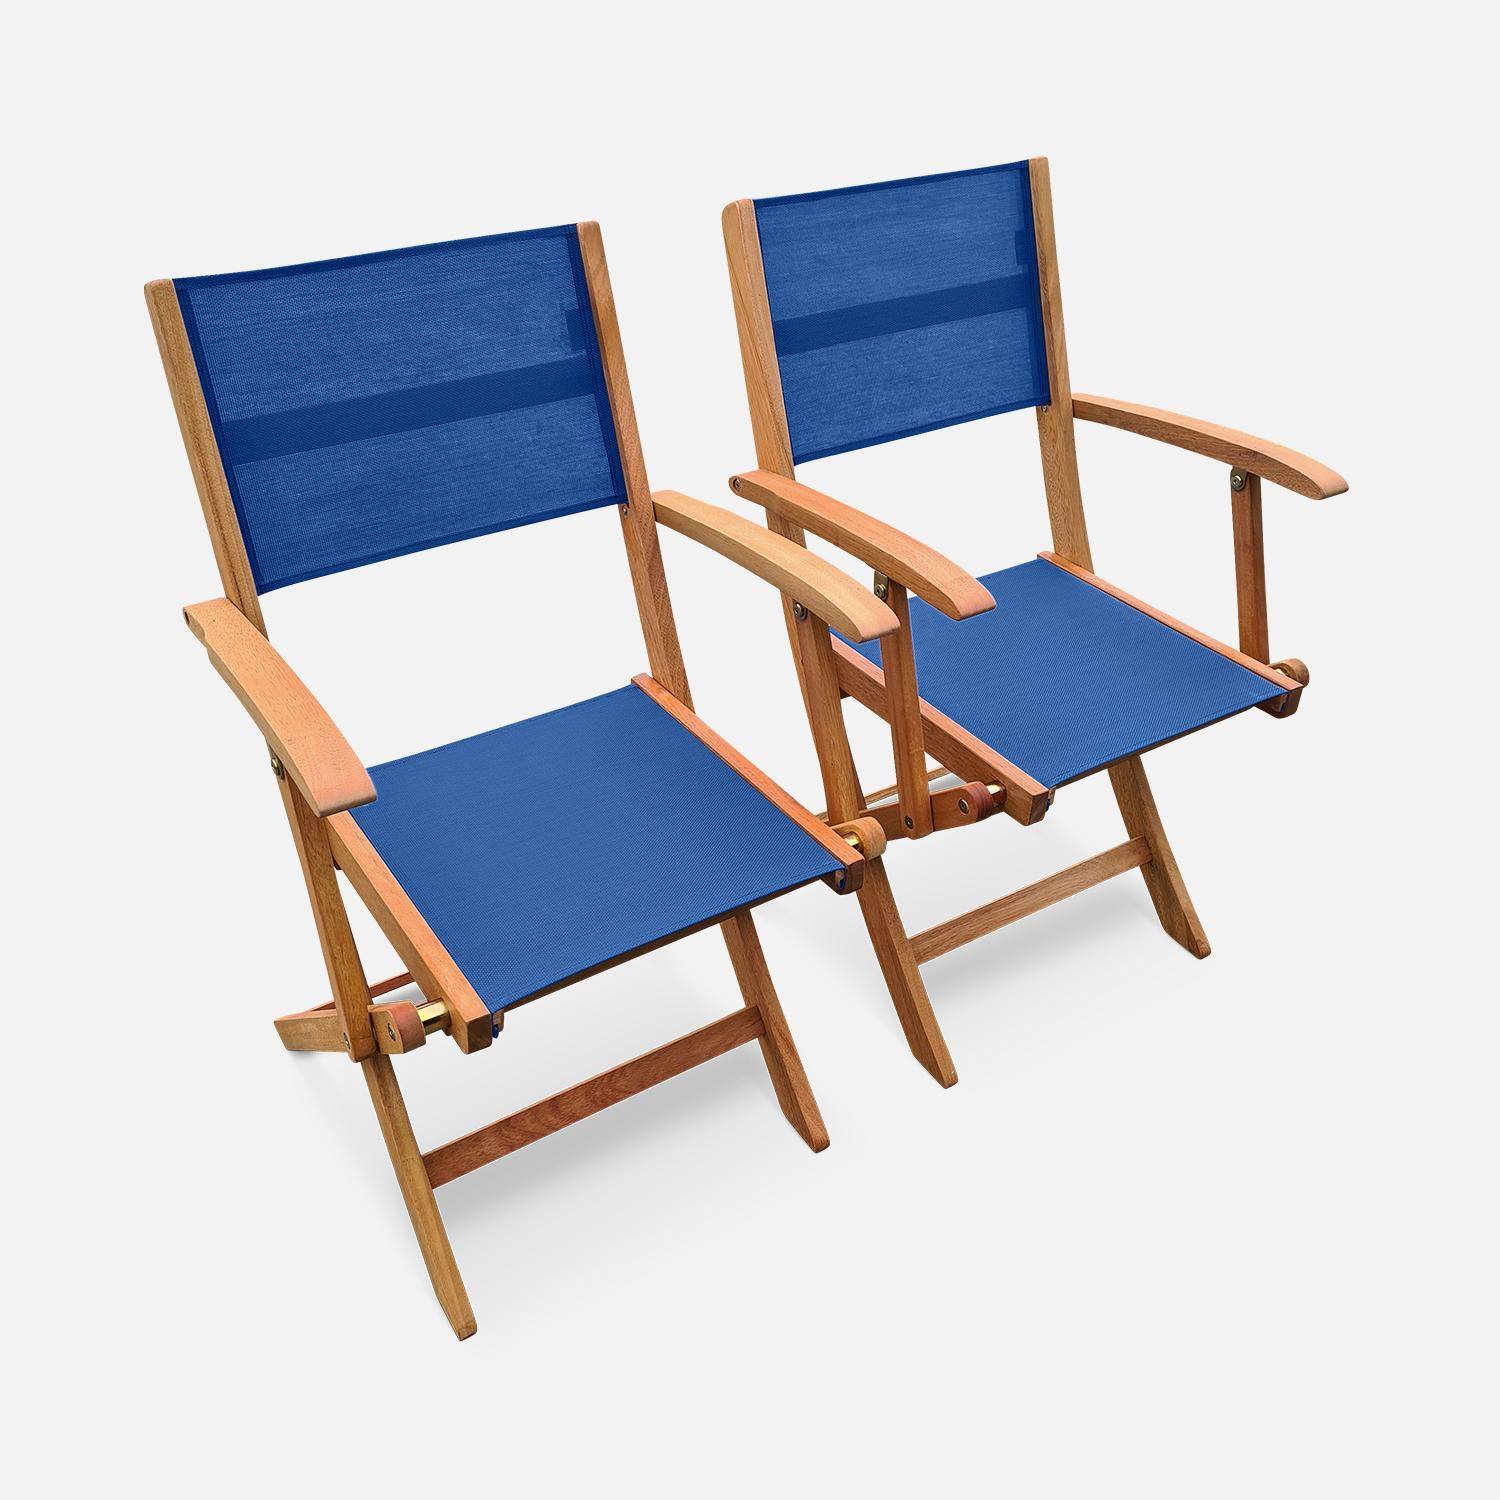 Fauteuils de jardin en bois et textilène - Almeria Bleu nuit - 2 fauteuils pliants en bois d'Eucalyptus FSC huilé et textilène Photo1